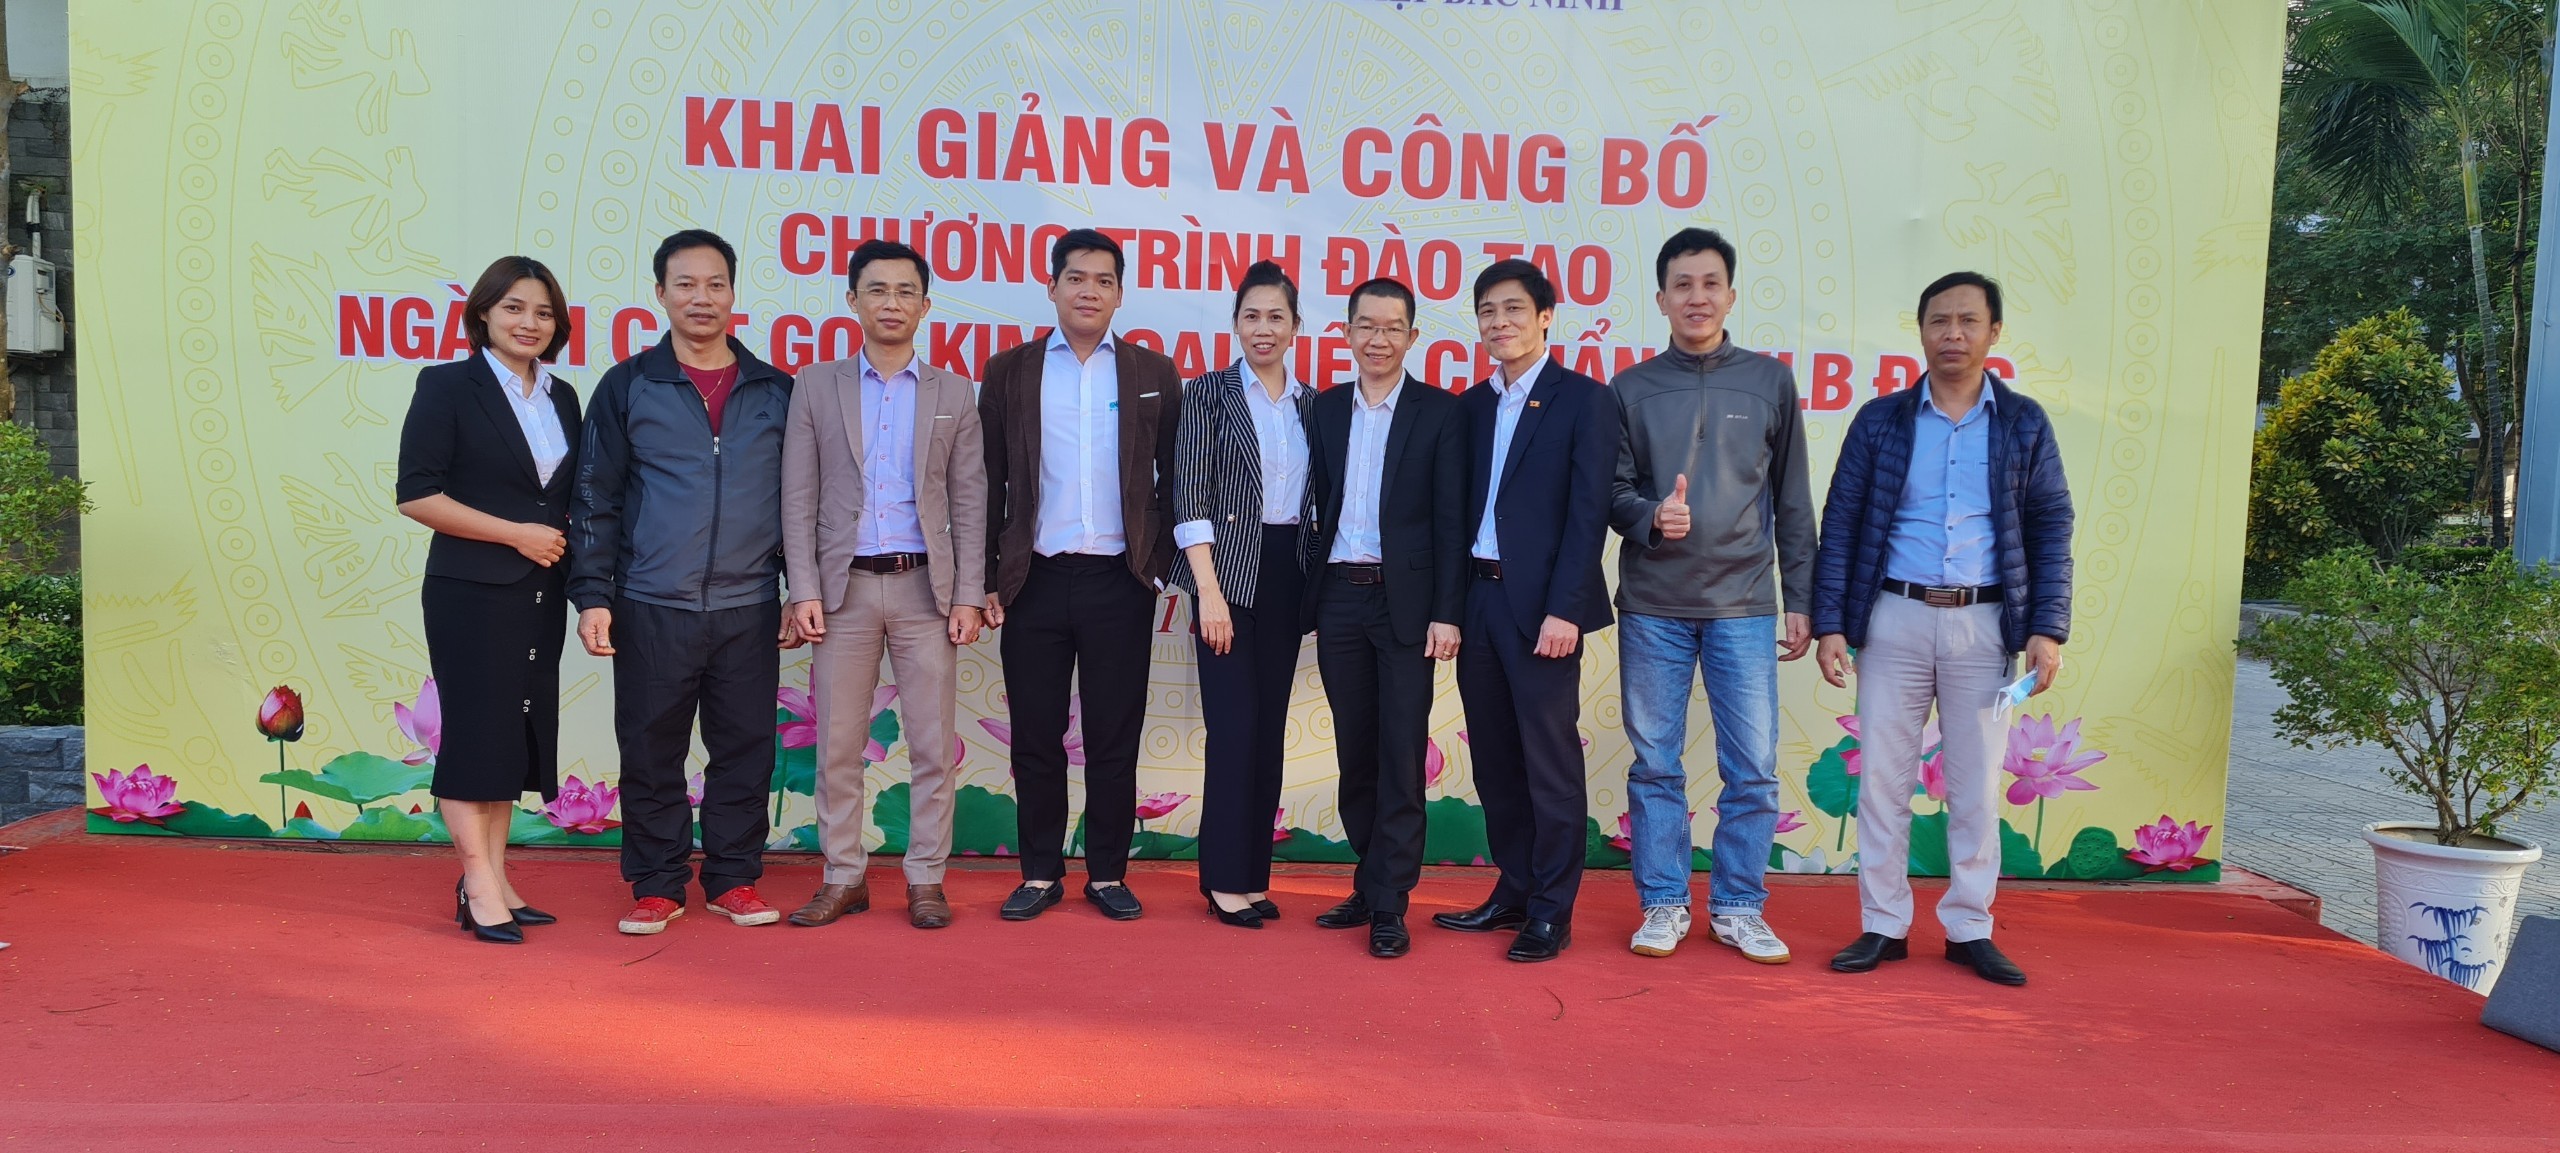 TVNAS & GNG hợp tác triển khai chương trình tuyển sinh đào tạo và khảo sát lắp đặt màn hình ti vi truyền thông tại Bắc Ninh